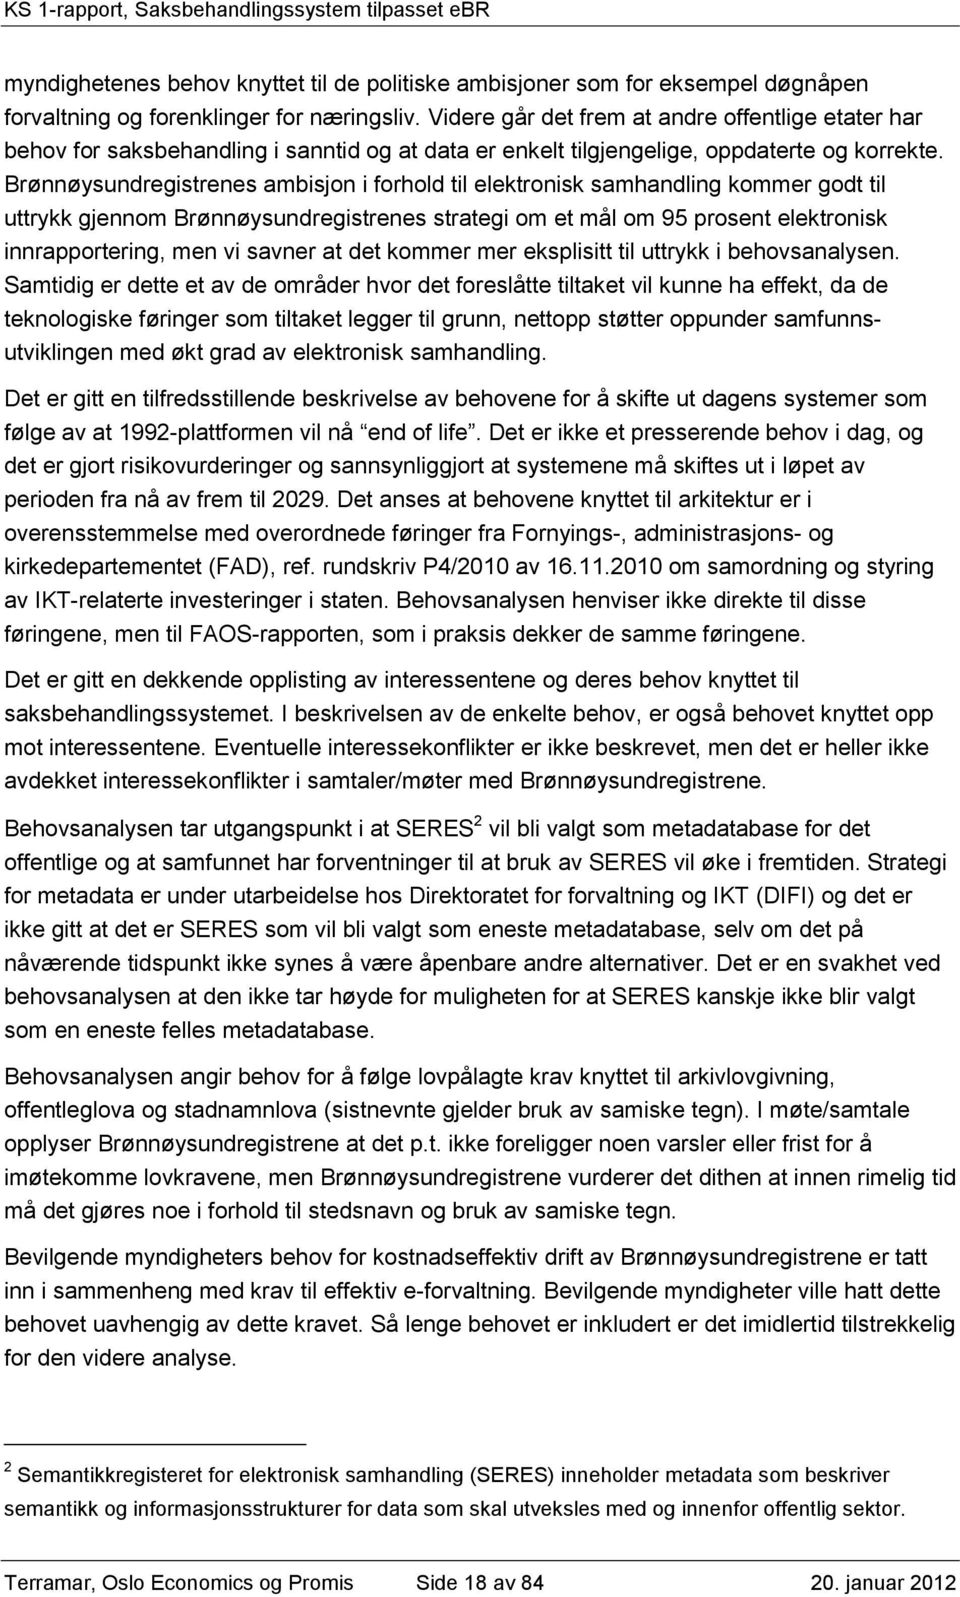 Brønnøysundregistrenes ambisjon i forhold til elektronisk samhandling kommer godt til uttrykk gjennom Brønnøysundregistrenes strategi om et mål om 95 prosent elektronisk innrapportering, men vi